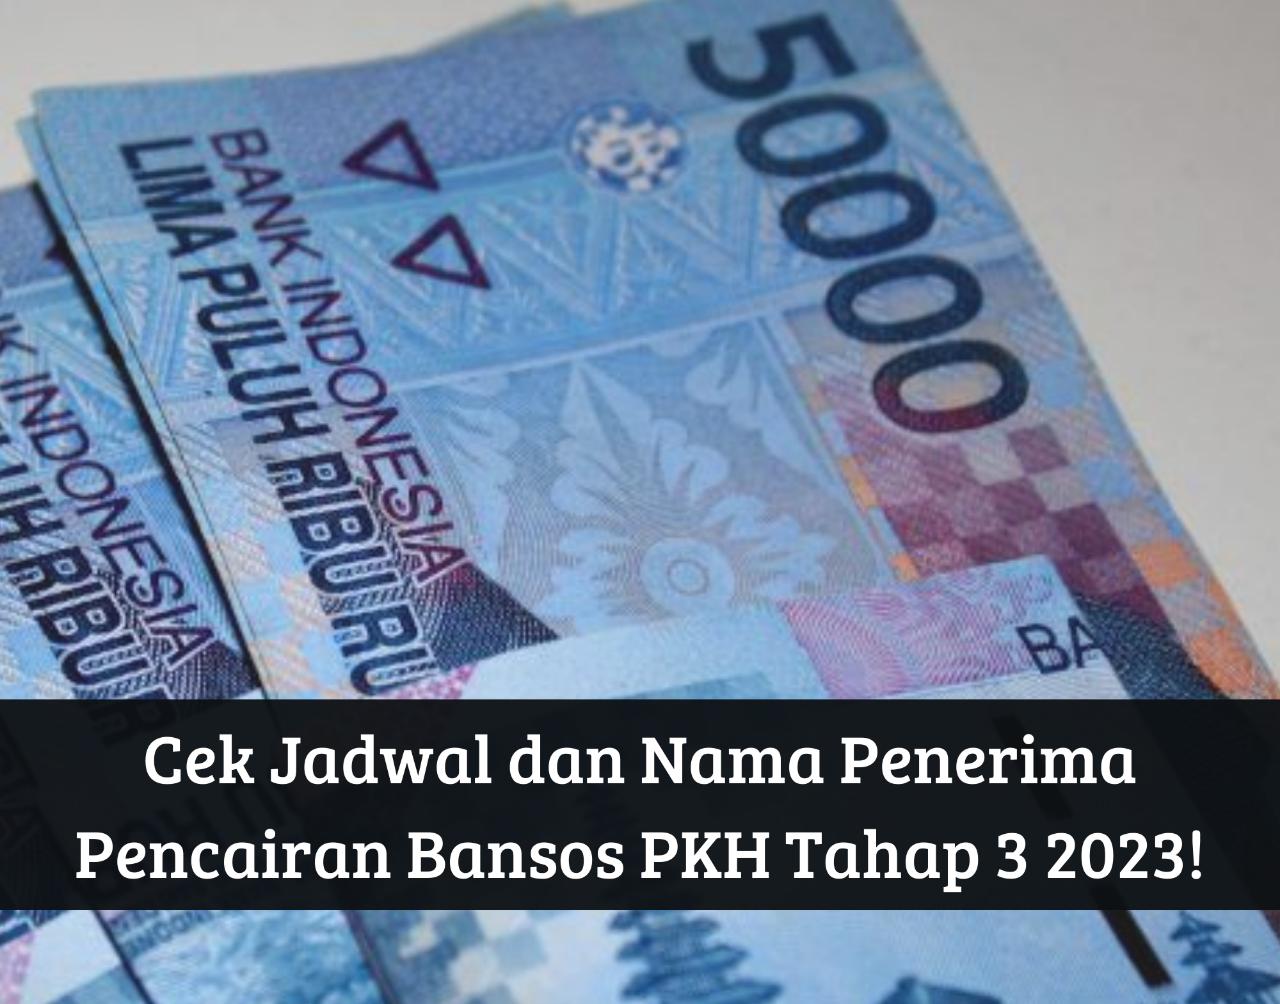 Cek Jadwal dan Nama Penerima Pencairan Bansos PKH Tahap 3 2023, Cair hingga Rp3.000.000